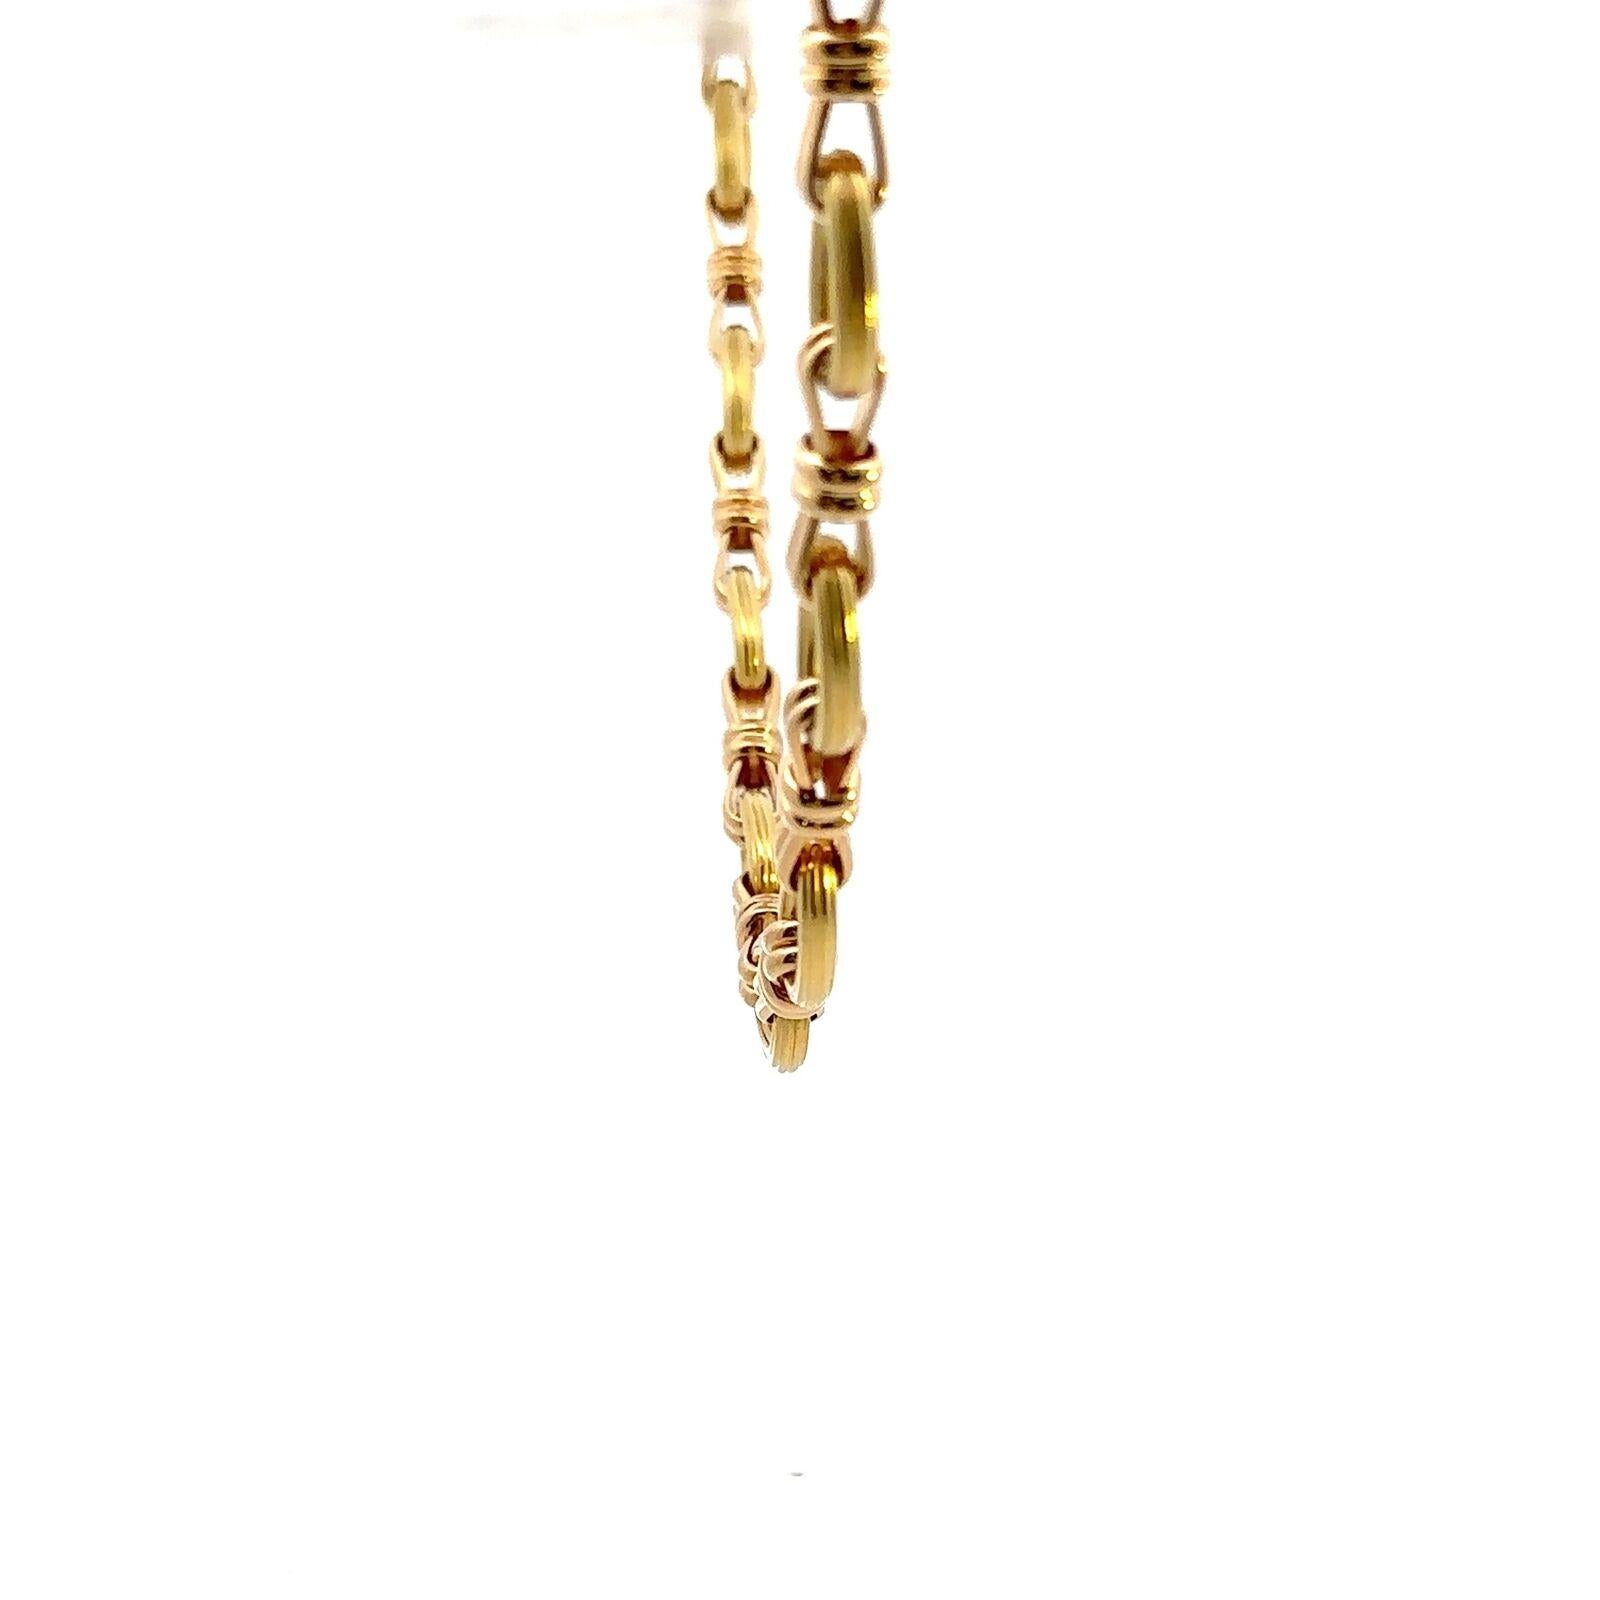 Chaumet Paris Collier à maillons en or jaune 18k Vintage Circa 1970

Voici l'occasion d'acquérir un magnifique collier de créateur très recherché.  

Le collier est constitué de cercles et de maillons, look iconique des années 1970.  Le poids est de